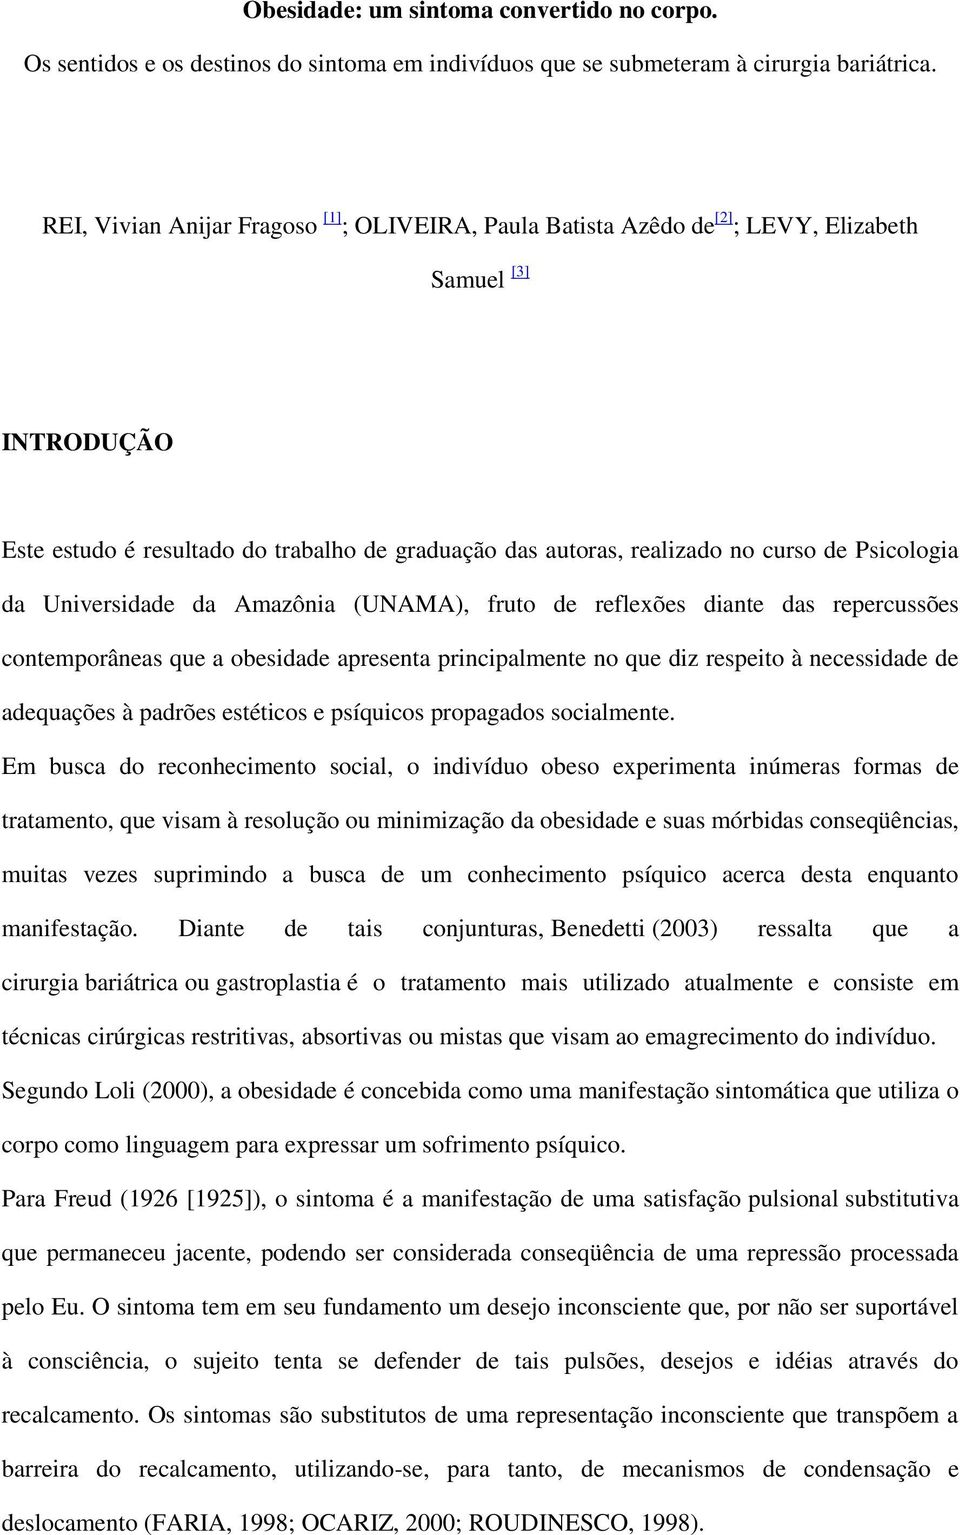 Psicologia da Universidade da Amazônia (UNAMA), fruto de reflexões diante das repercussões contemporâneas que a obesidade apresenta principalmente no que diz respeito à necessidade de adequações à